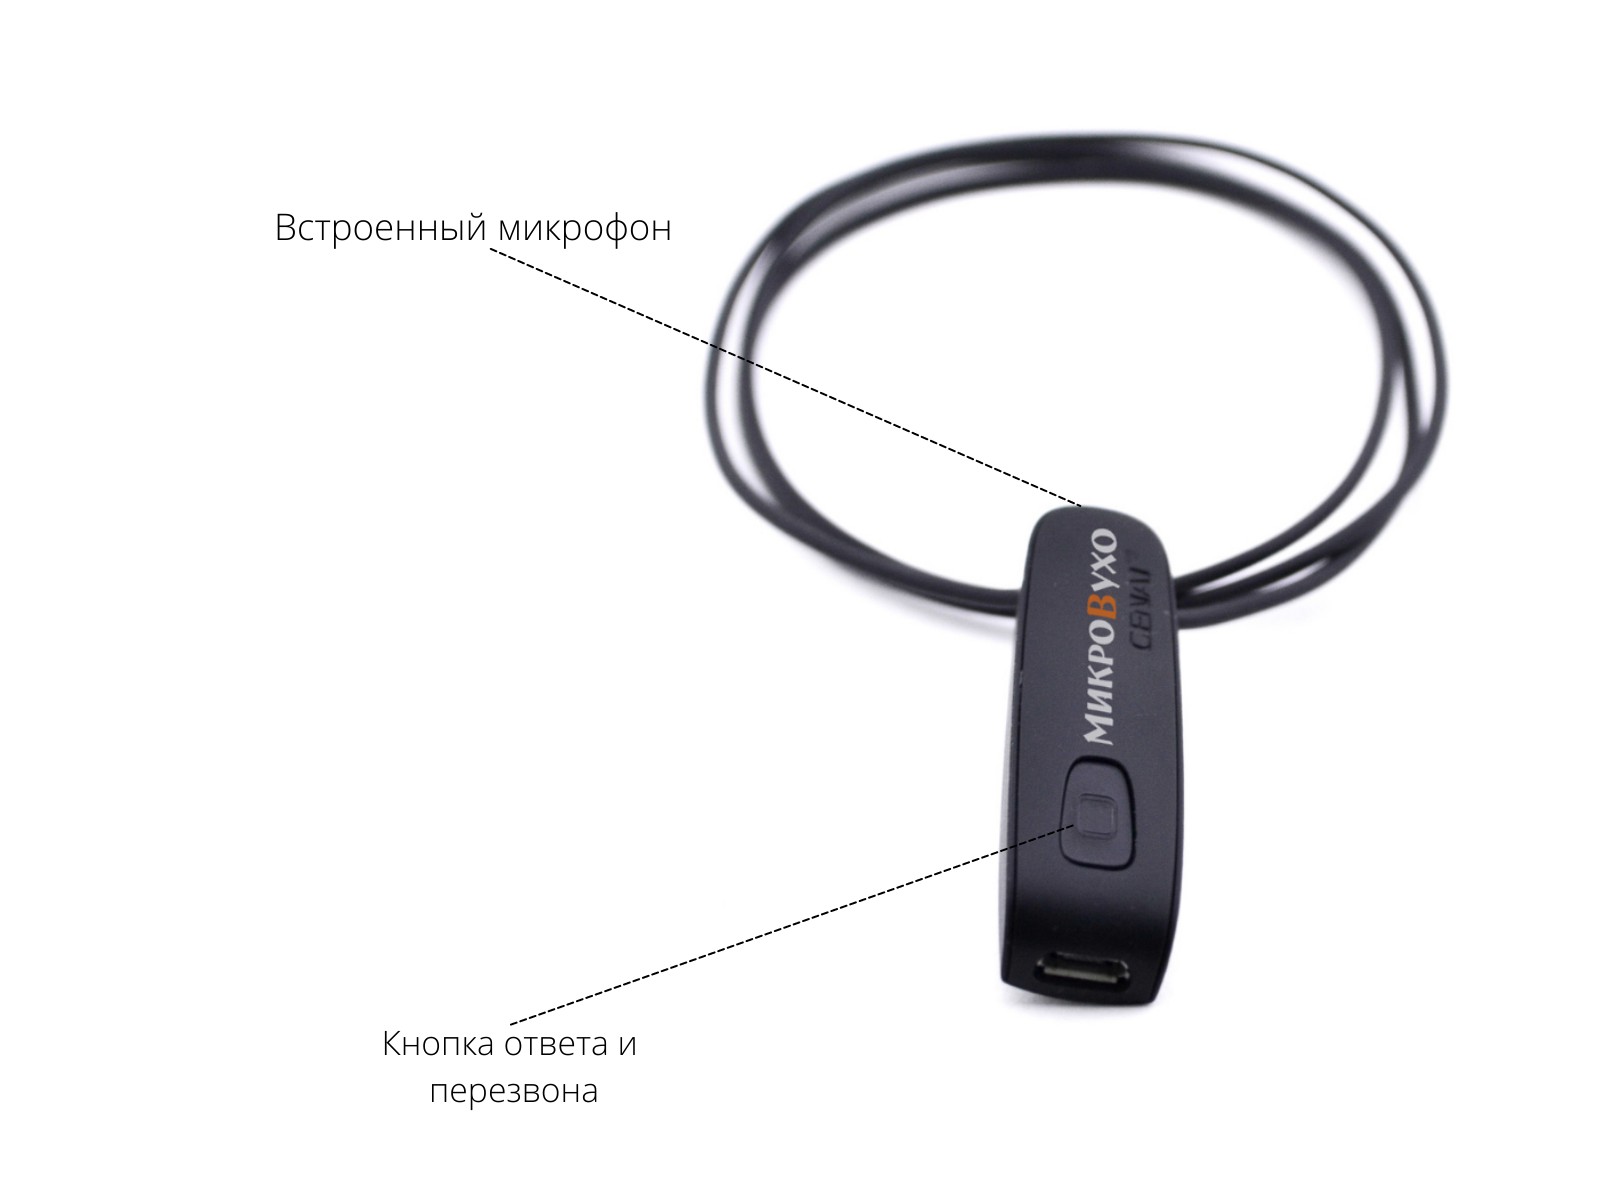 Универсальная гарнитура Bluetooth Basic с капсулой Nano 4 мм и магнитами 2 мм - изображение 17